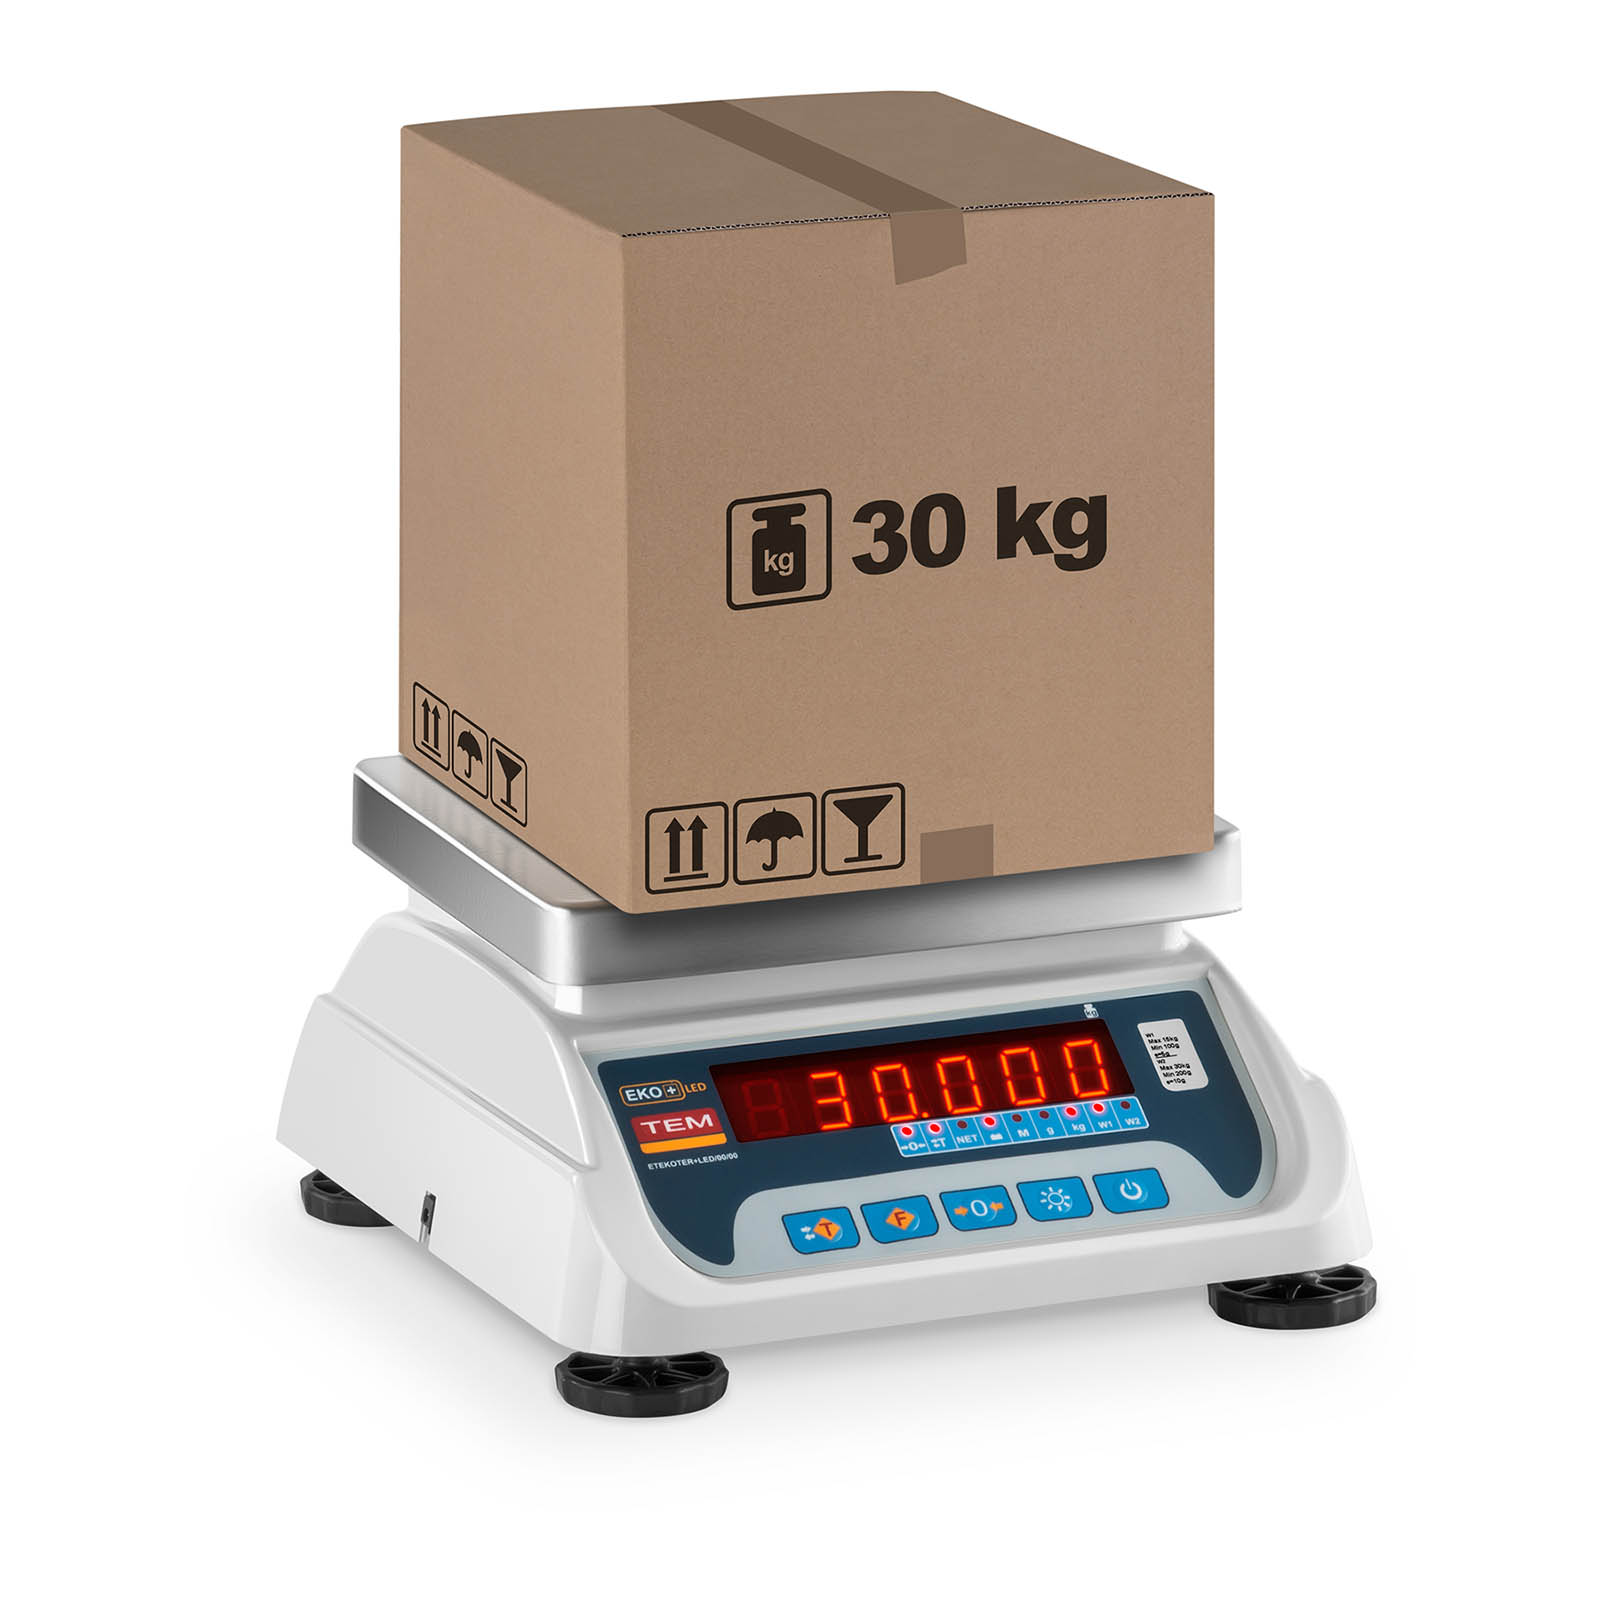 Obchodní váha - 15 kg/5 g - 30 kg/10 g - LED